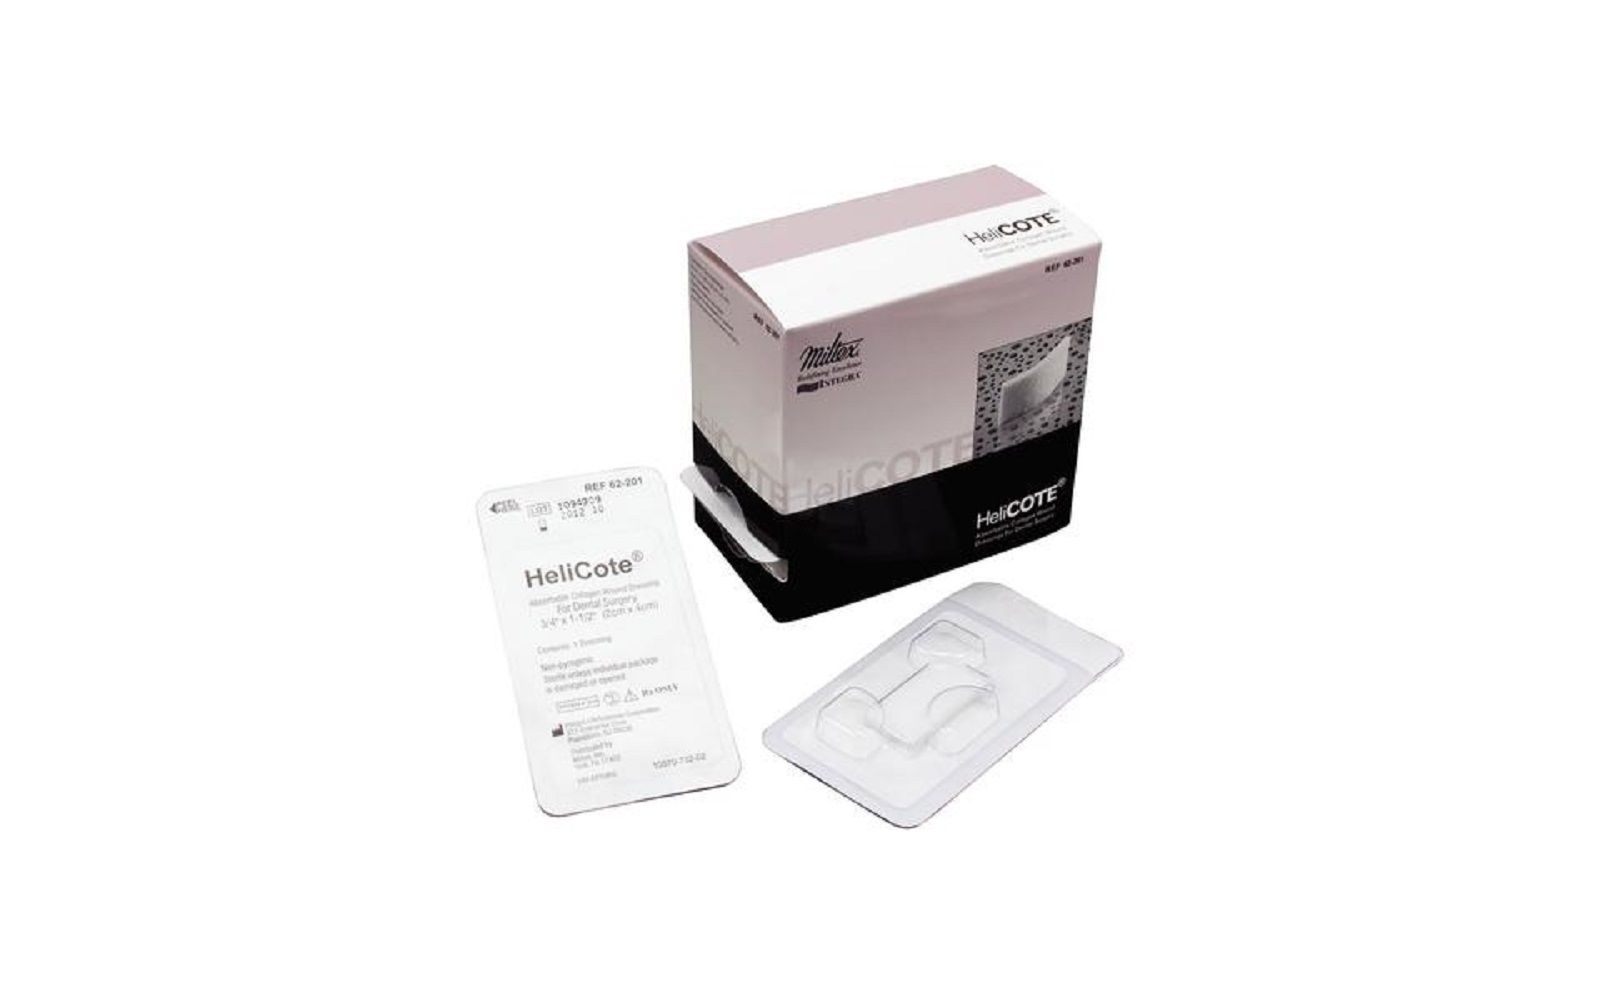 Helicote® collagen cote wound dressing – 3/4" x 1. 5", 10/pkg